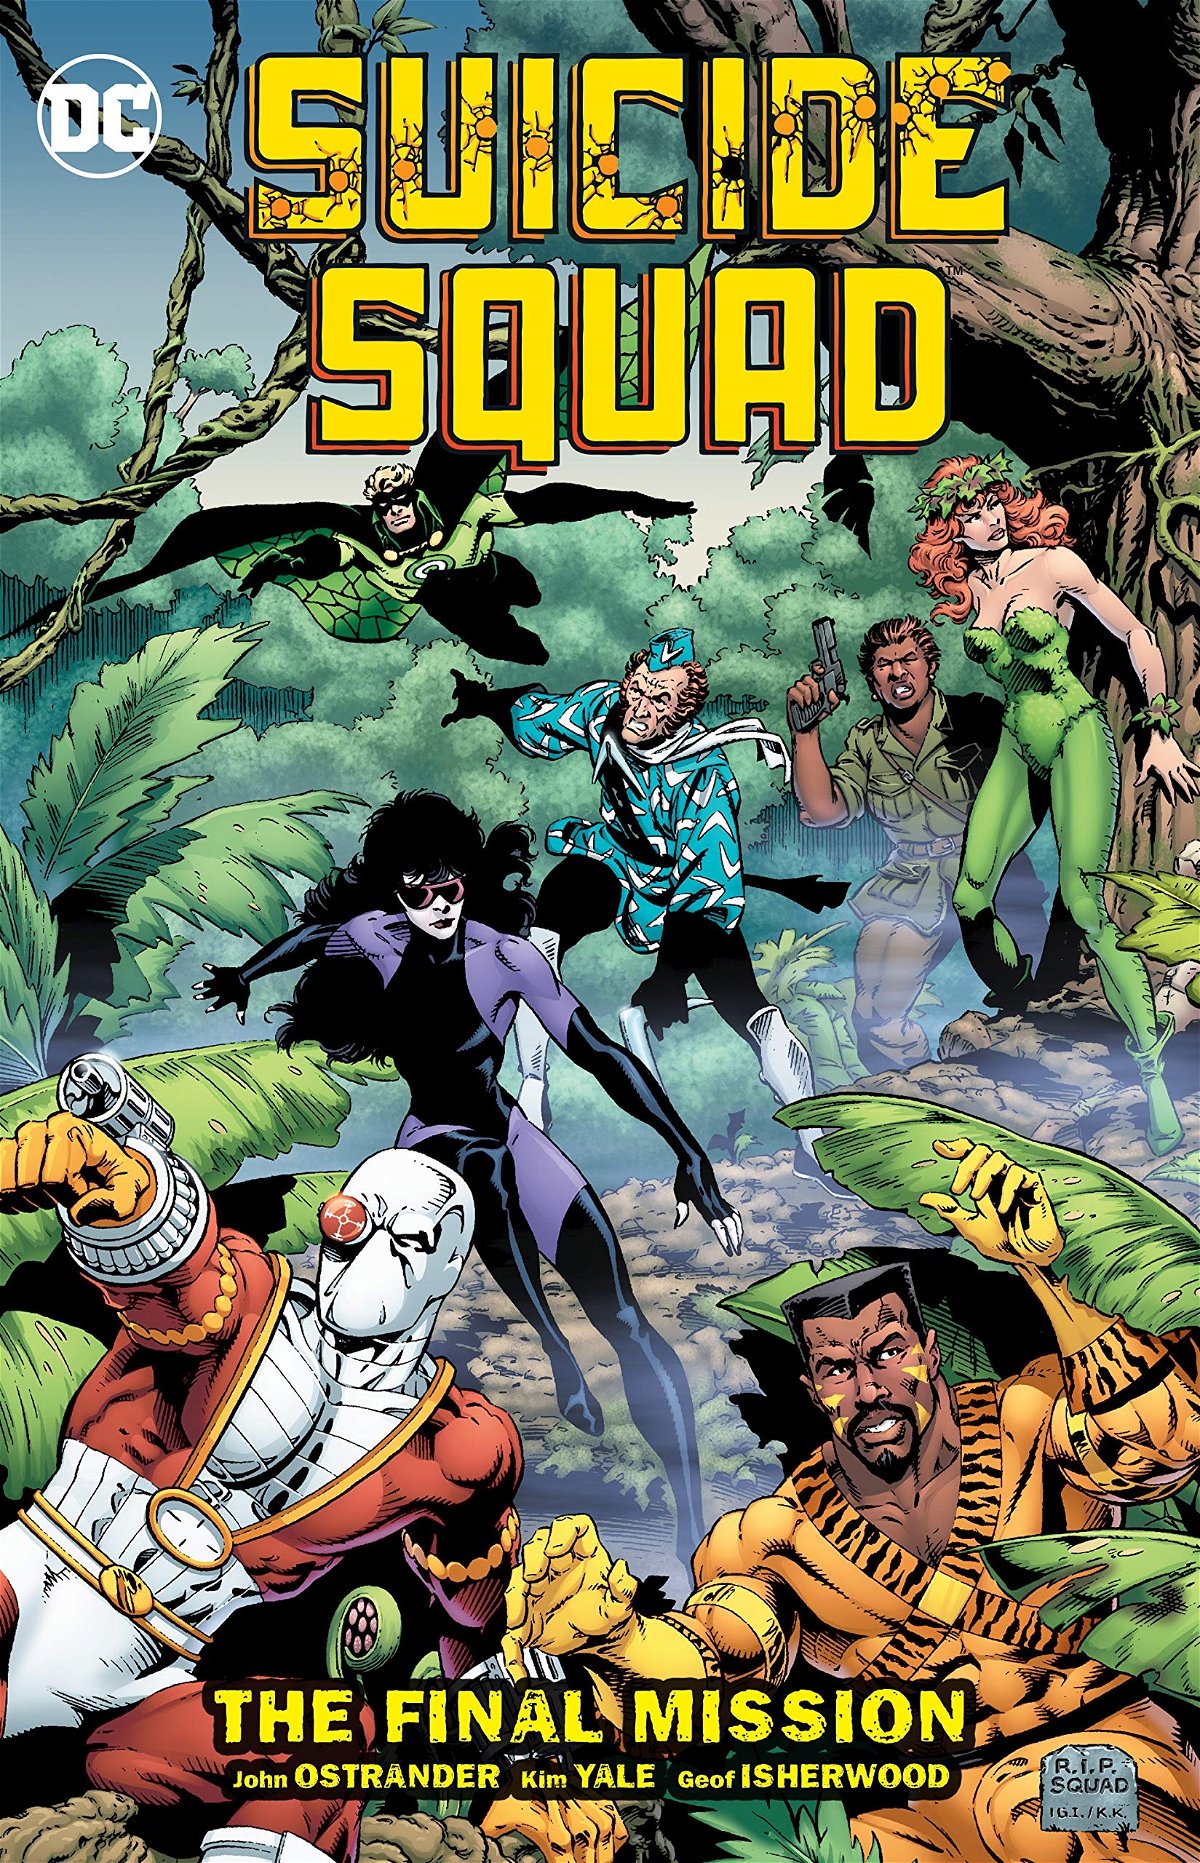 L'ottavo volume USA della Suicide Squad di John Ostrander